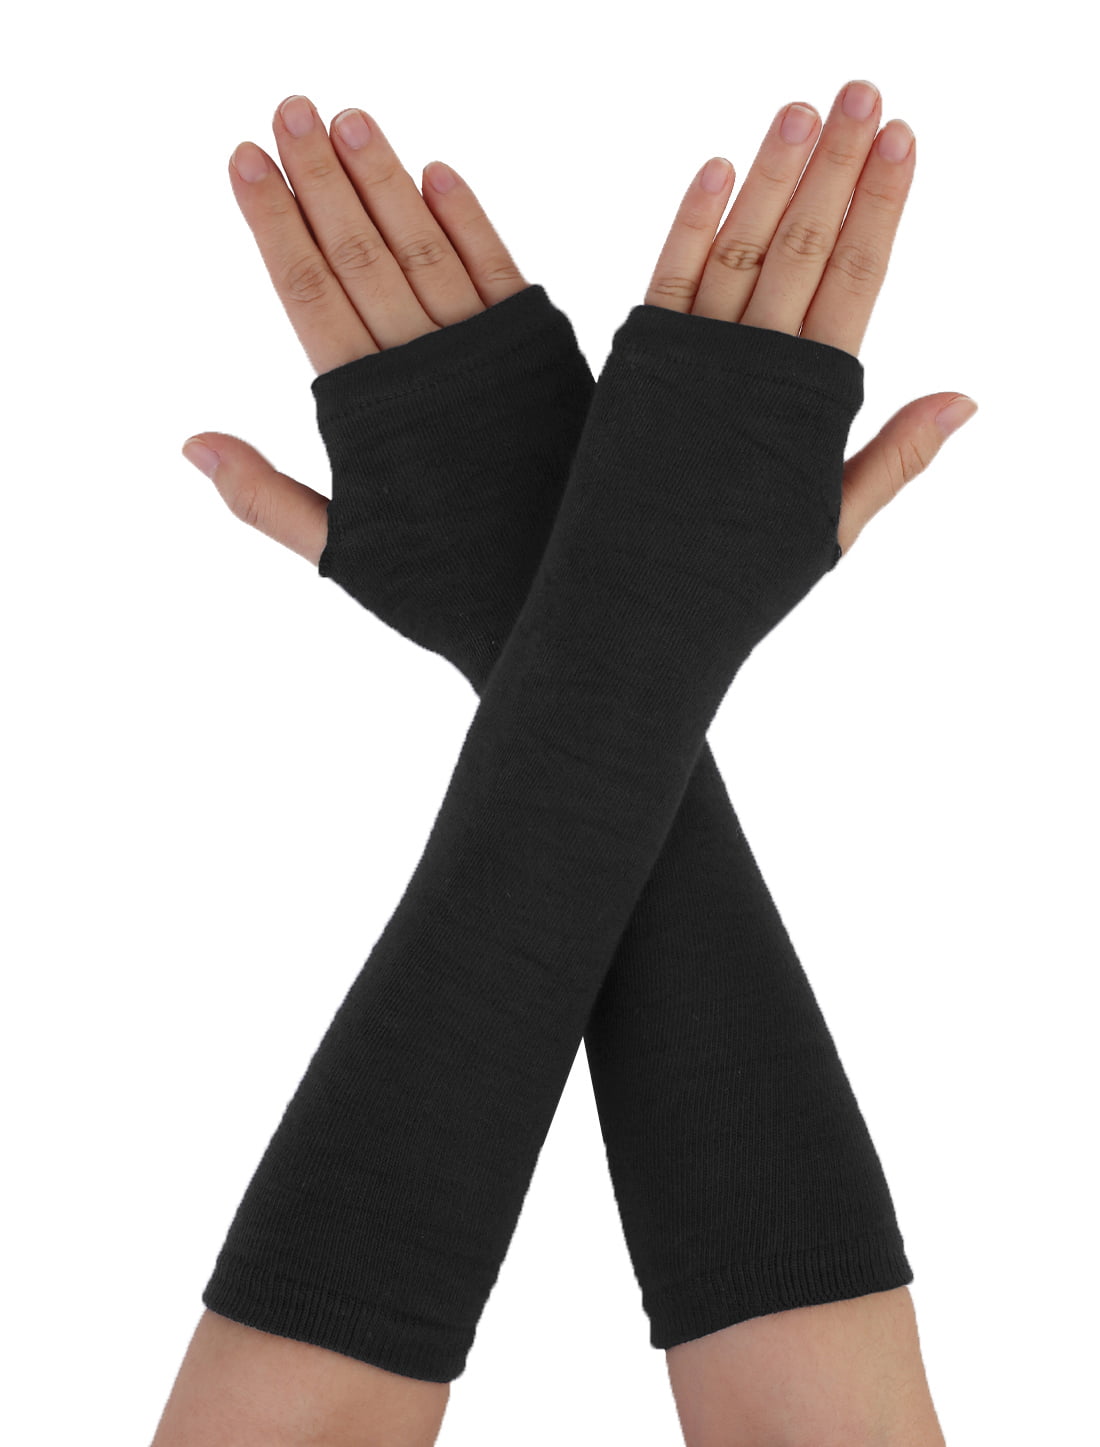 Quelife Women Winter Wrist Arm Warmer Solid Knitted Long Fingerless Gloves Mitten